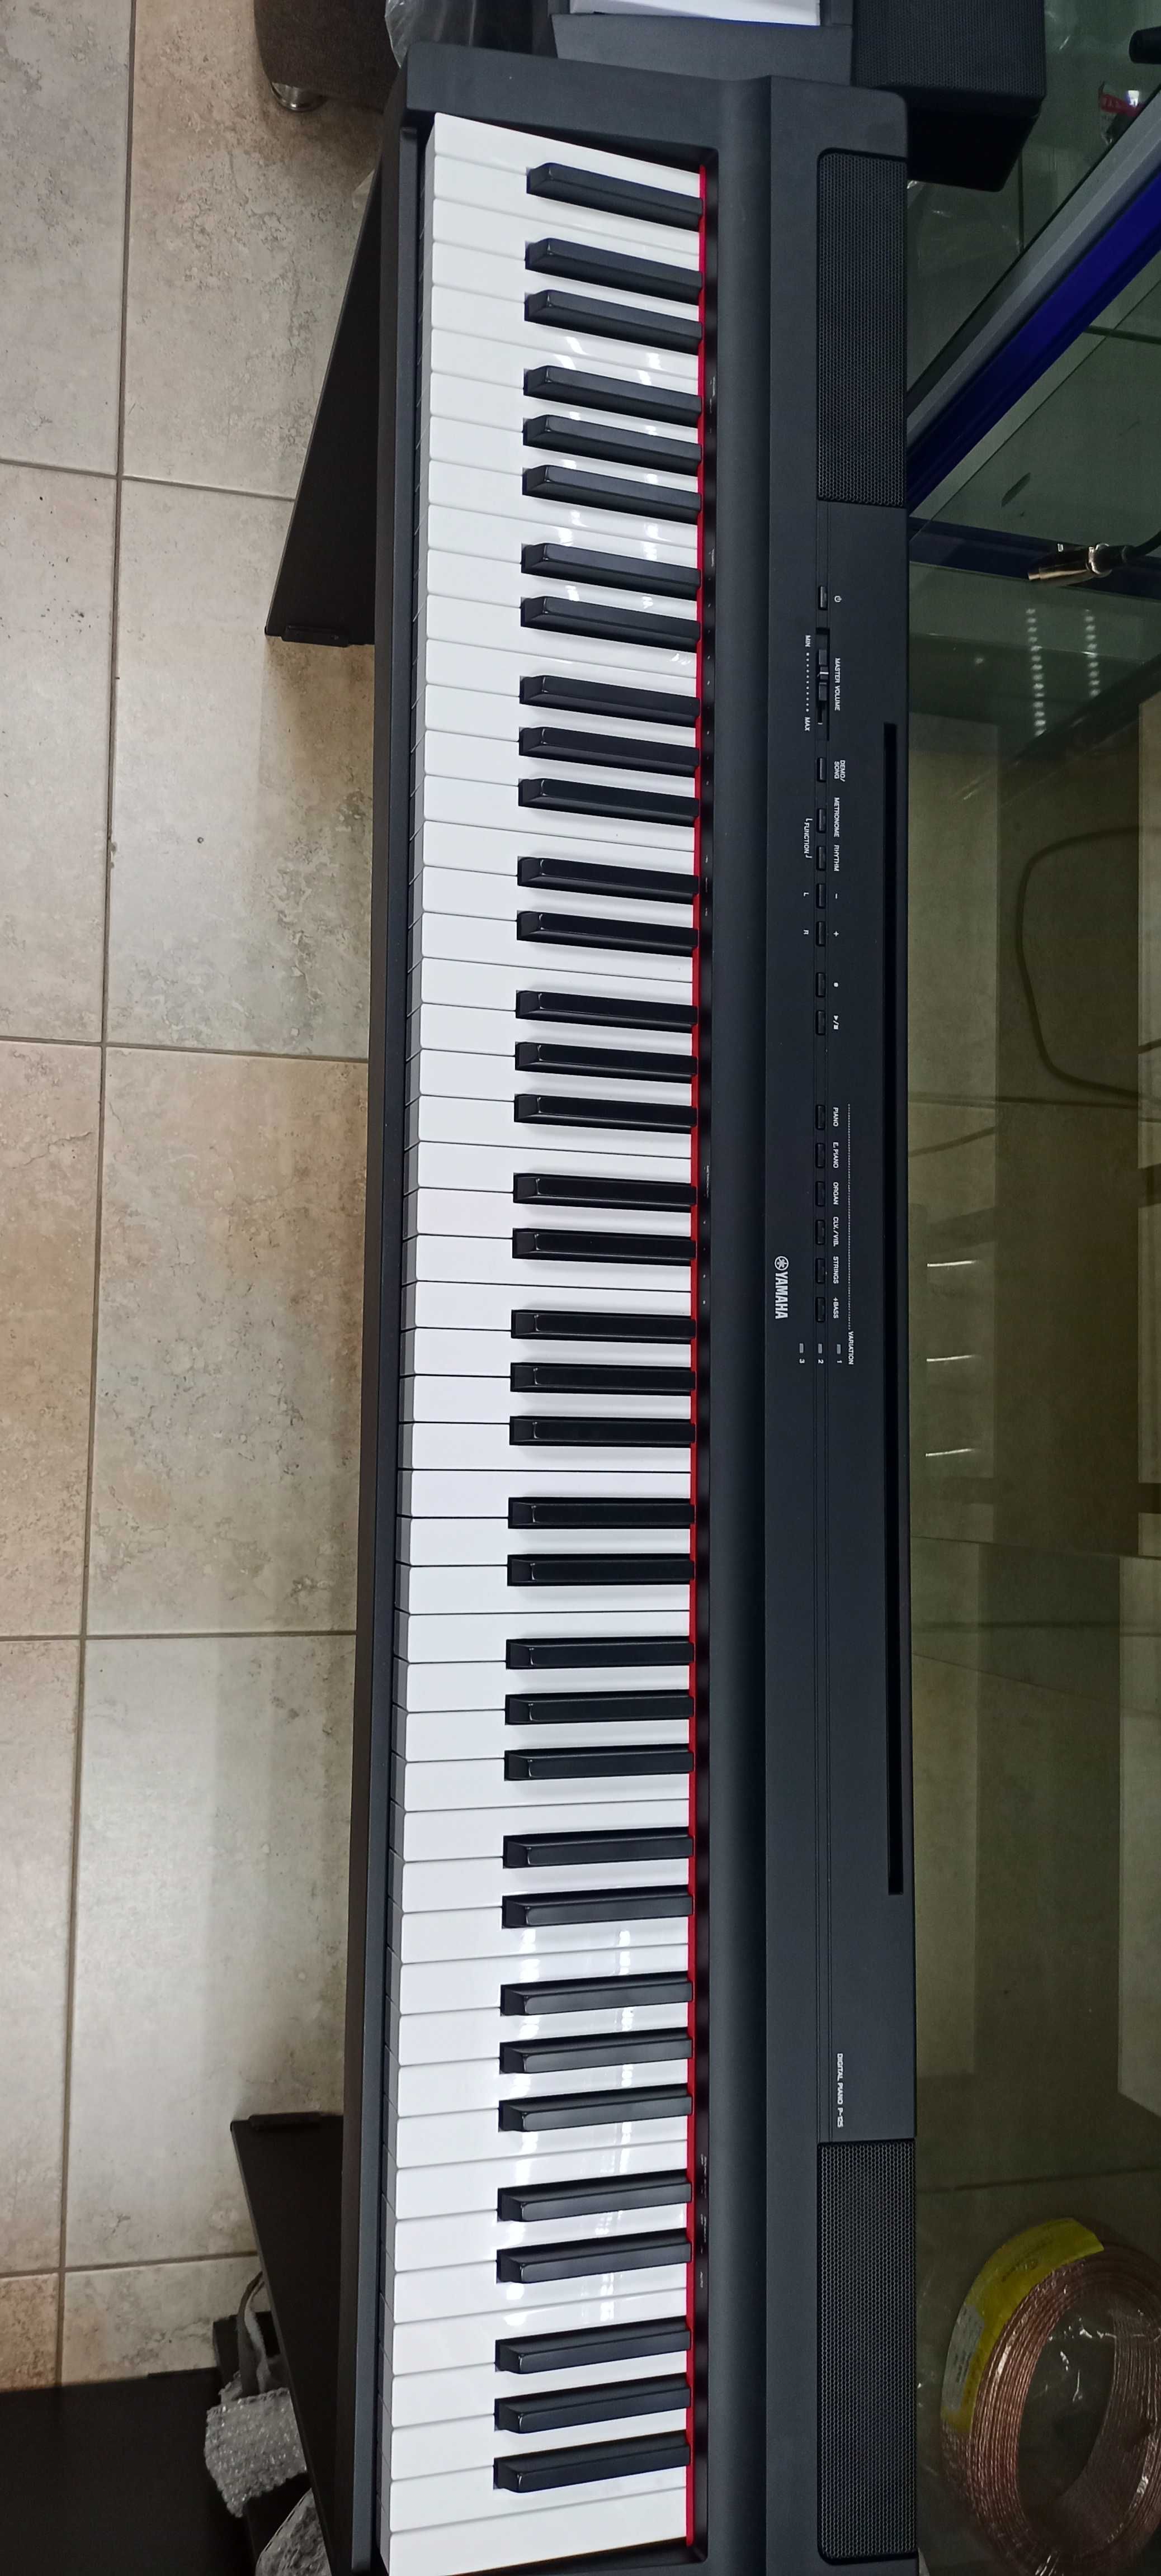 Цифровые электронные пианино " Yamaha P-125(оригинал)